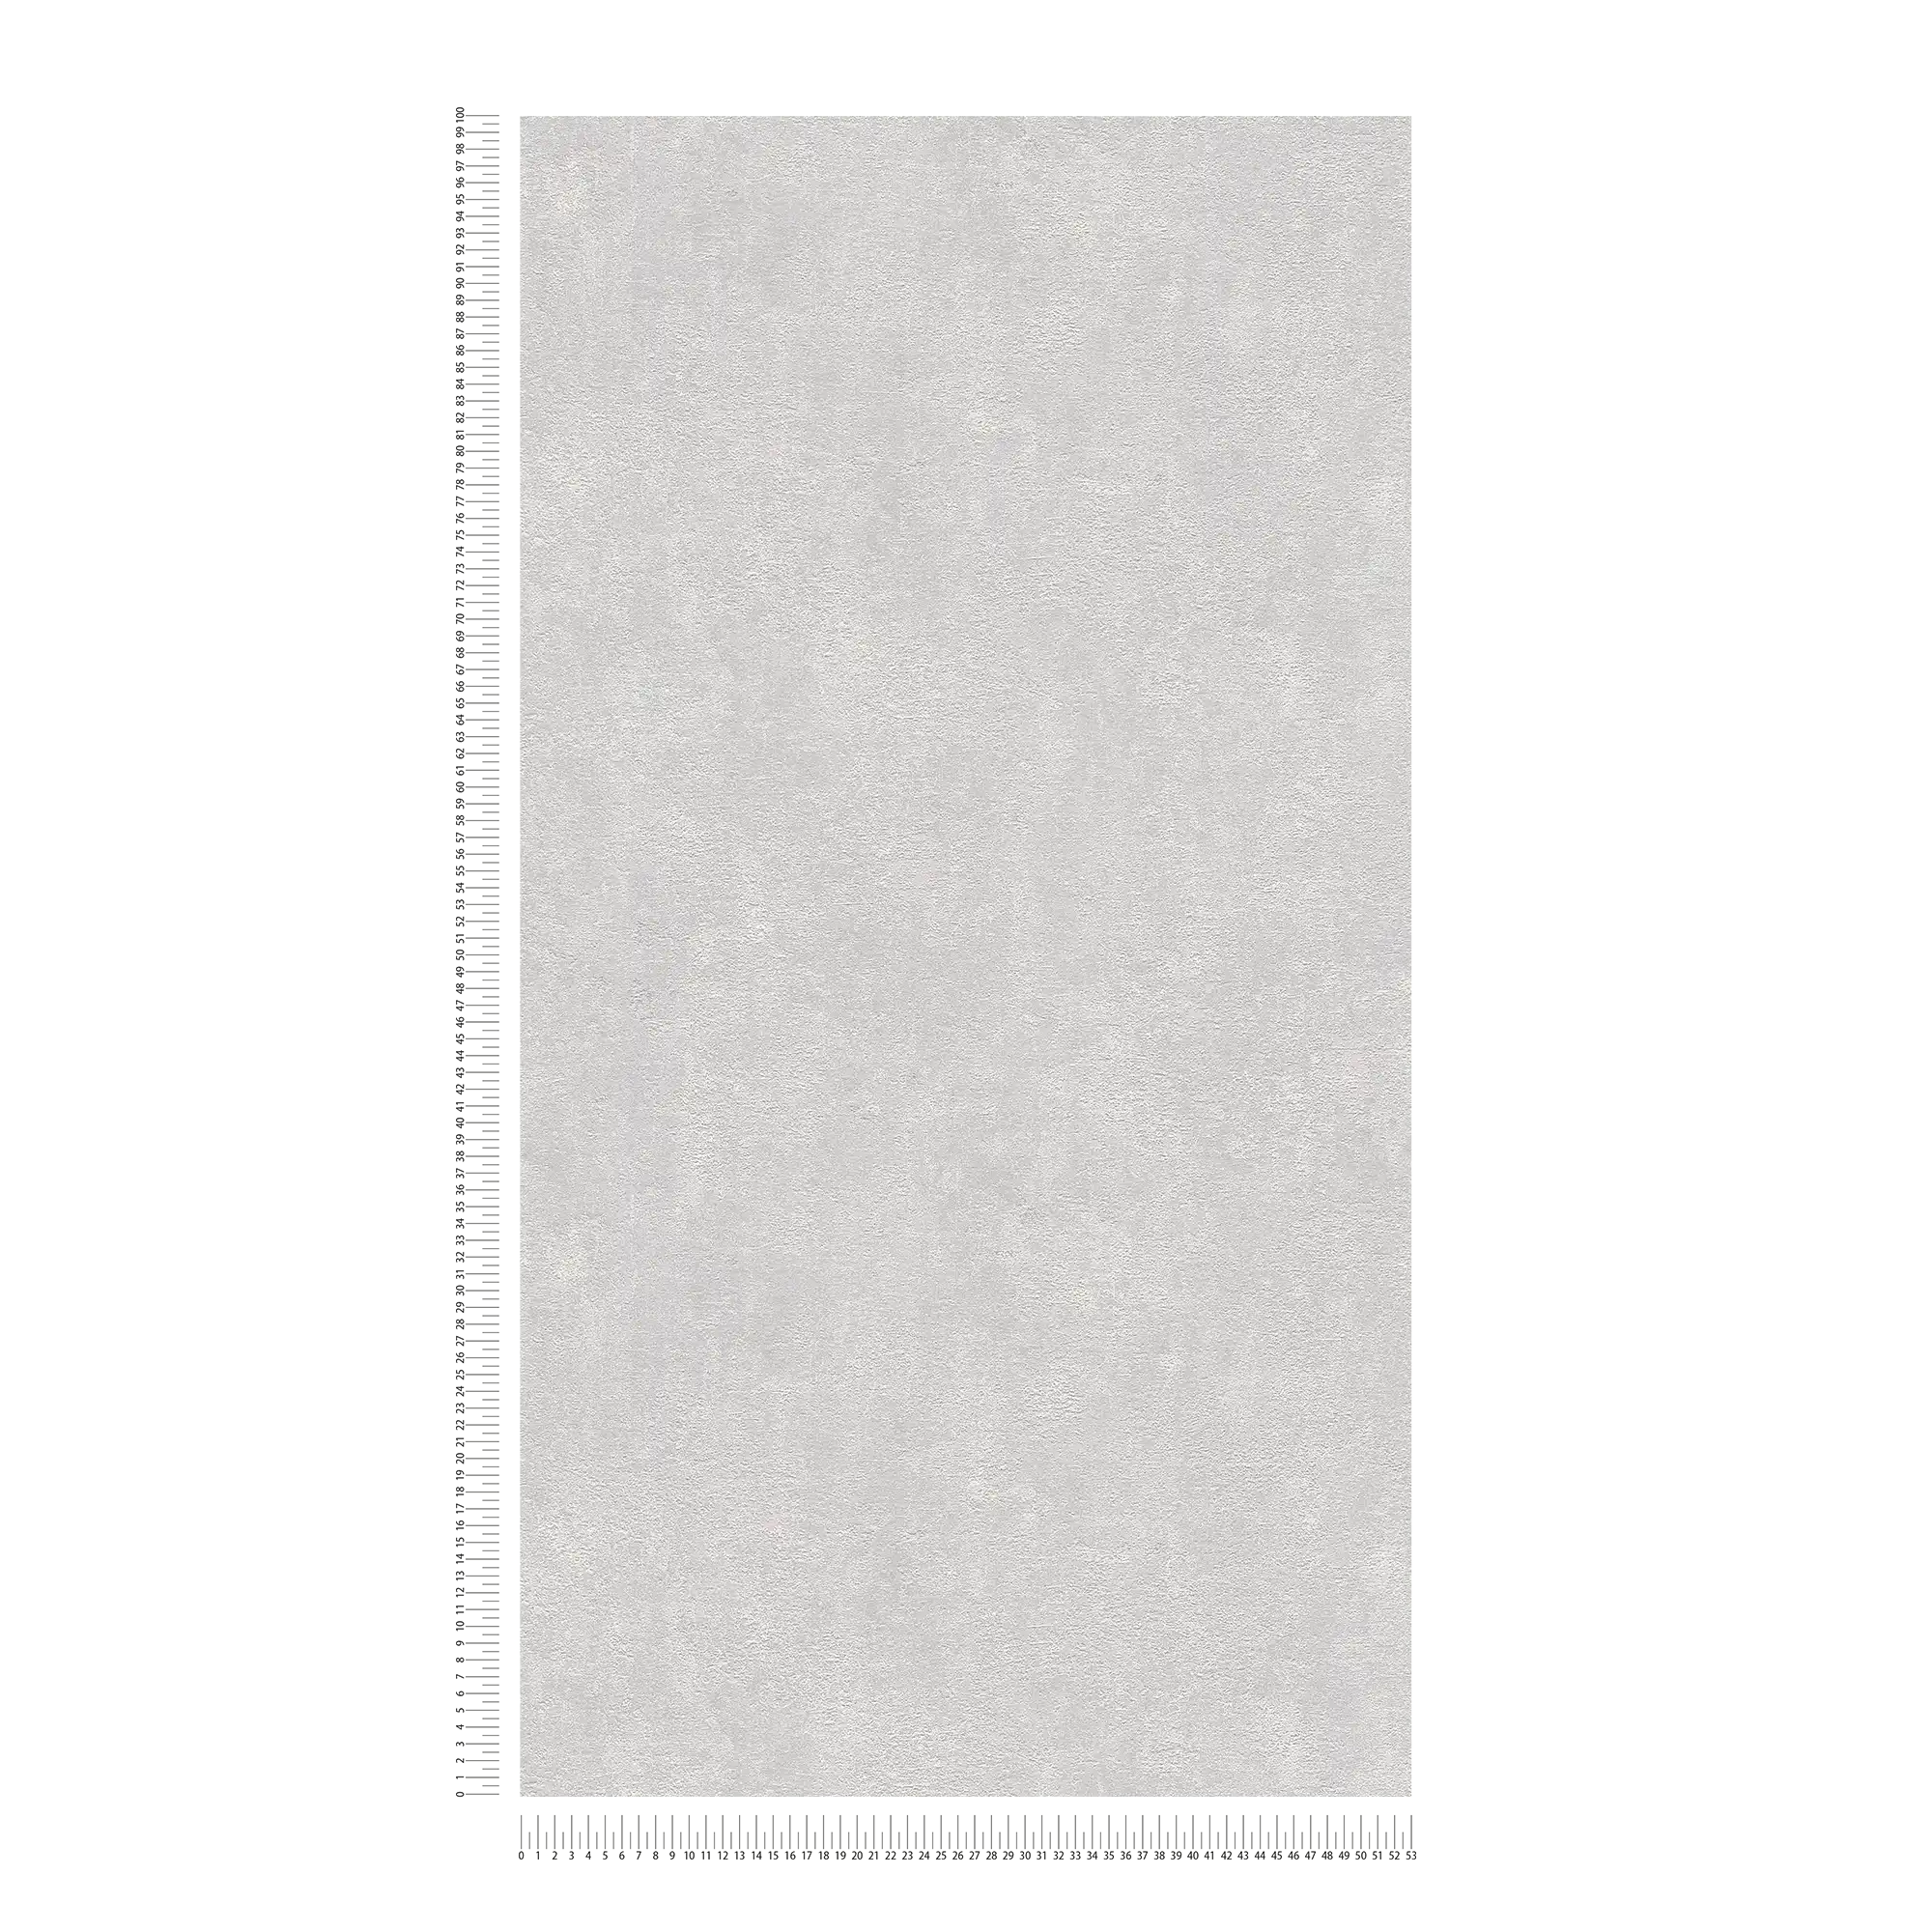             papel pintado estructura de yeso, liso y satinado - gris claro
        